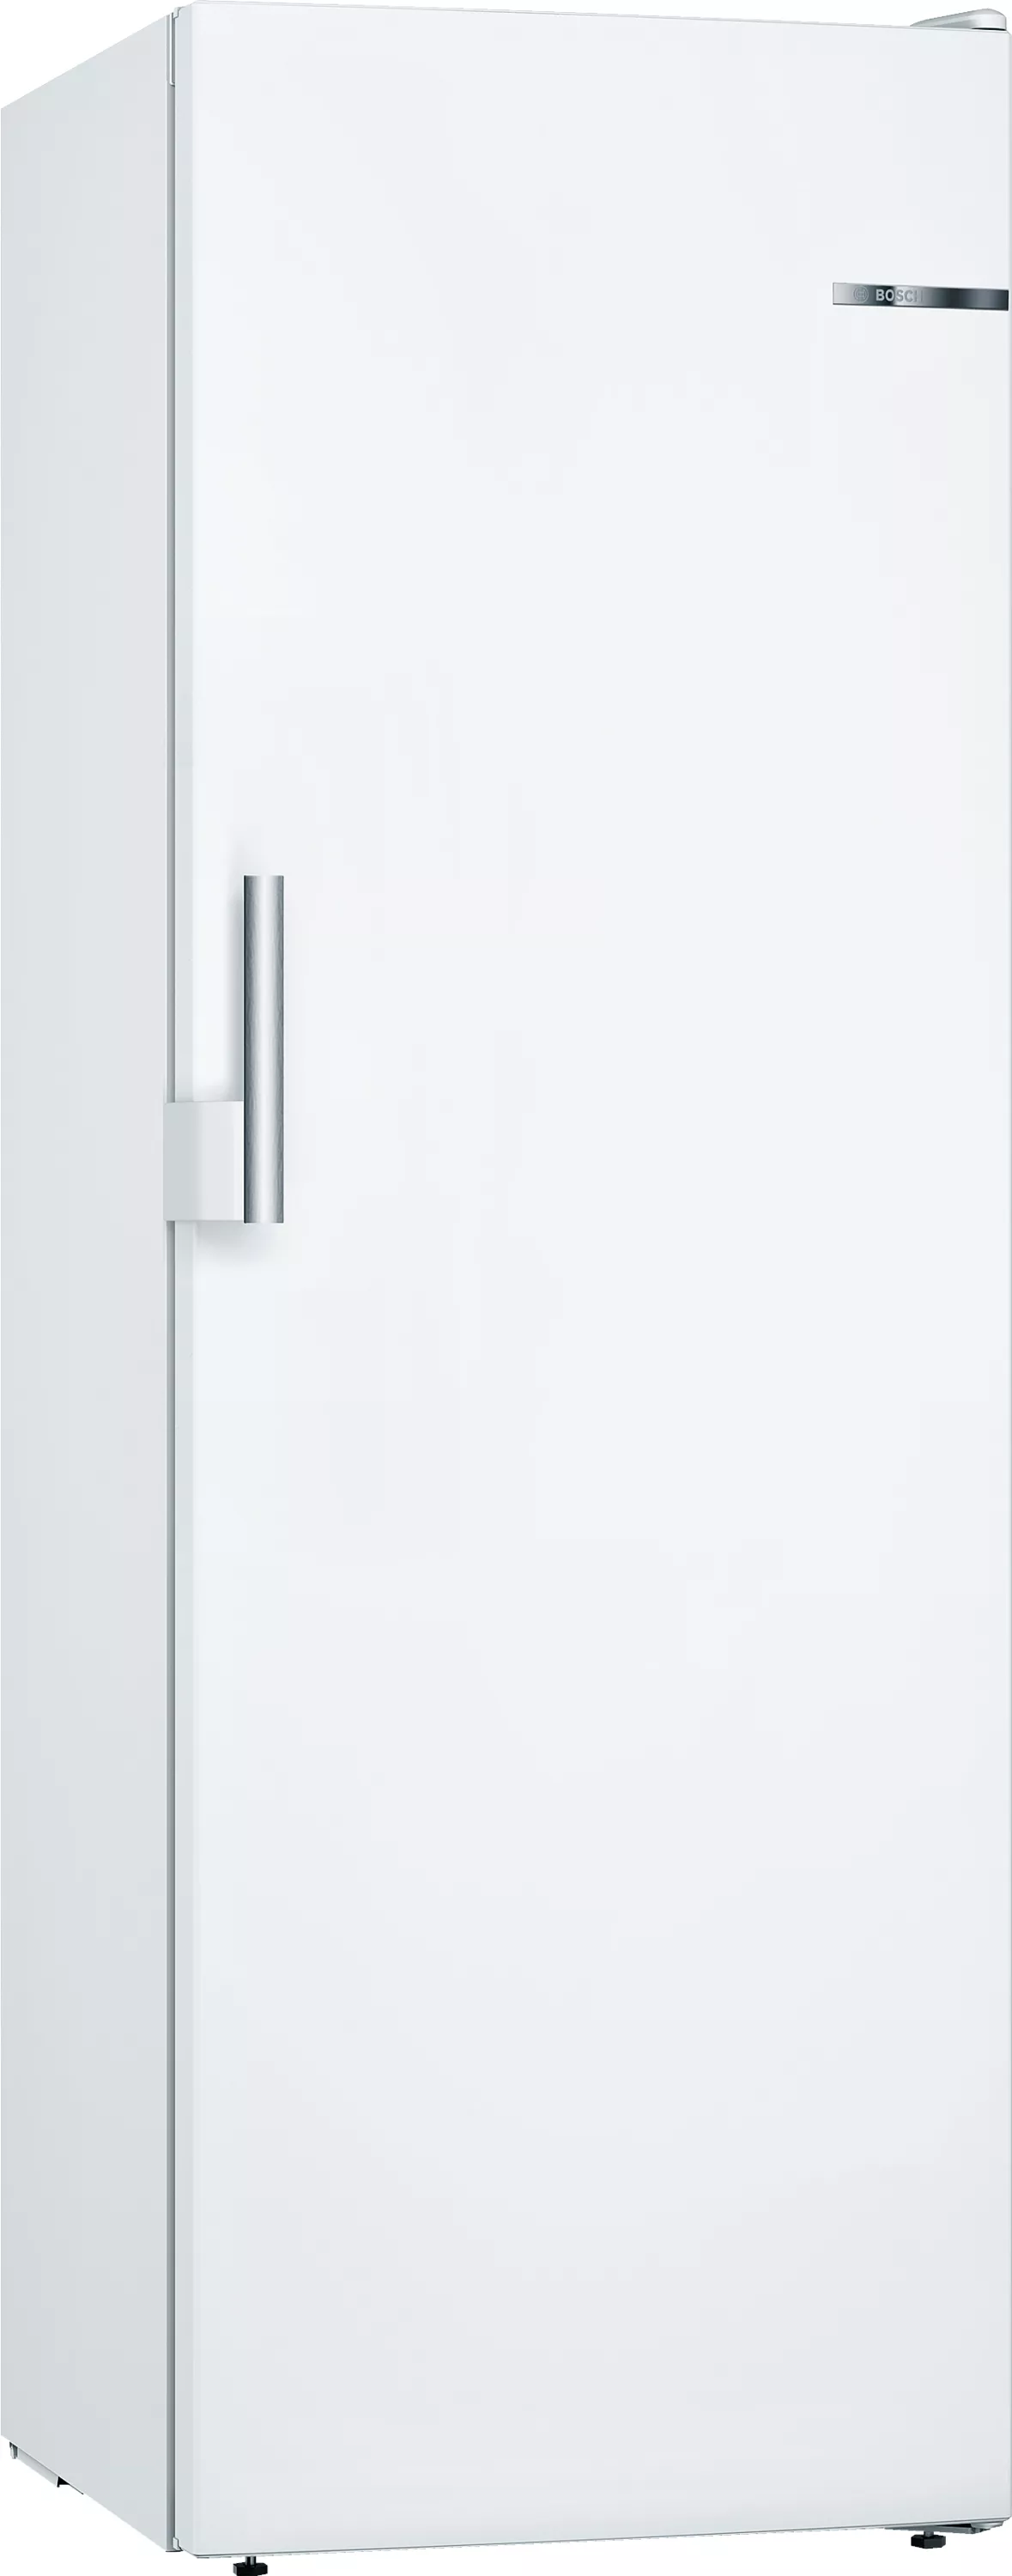 Bosch Serie 4, GSN33EWEV, Freistehender Gefrierschrank, 176 x 60 cm, Weiß